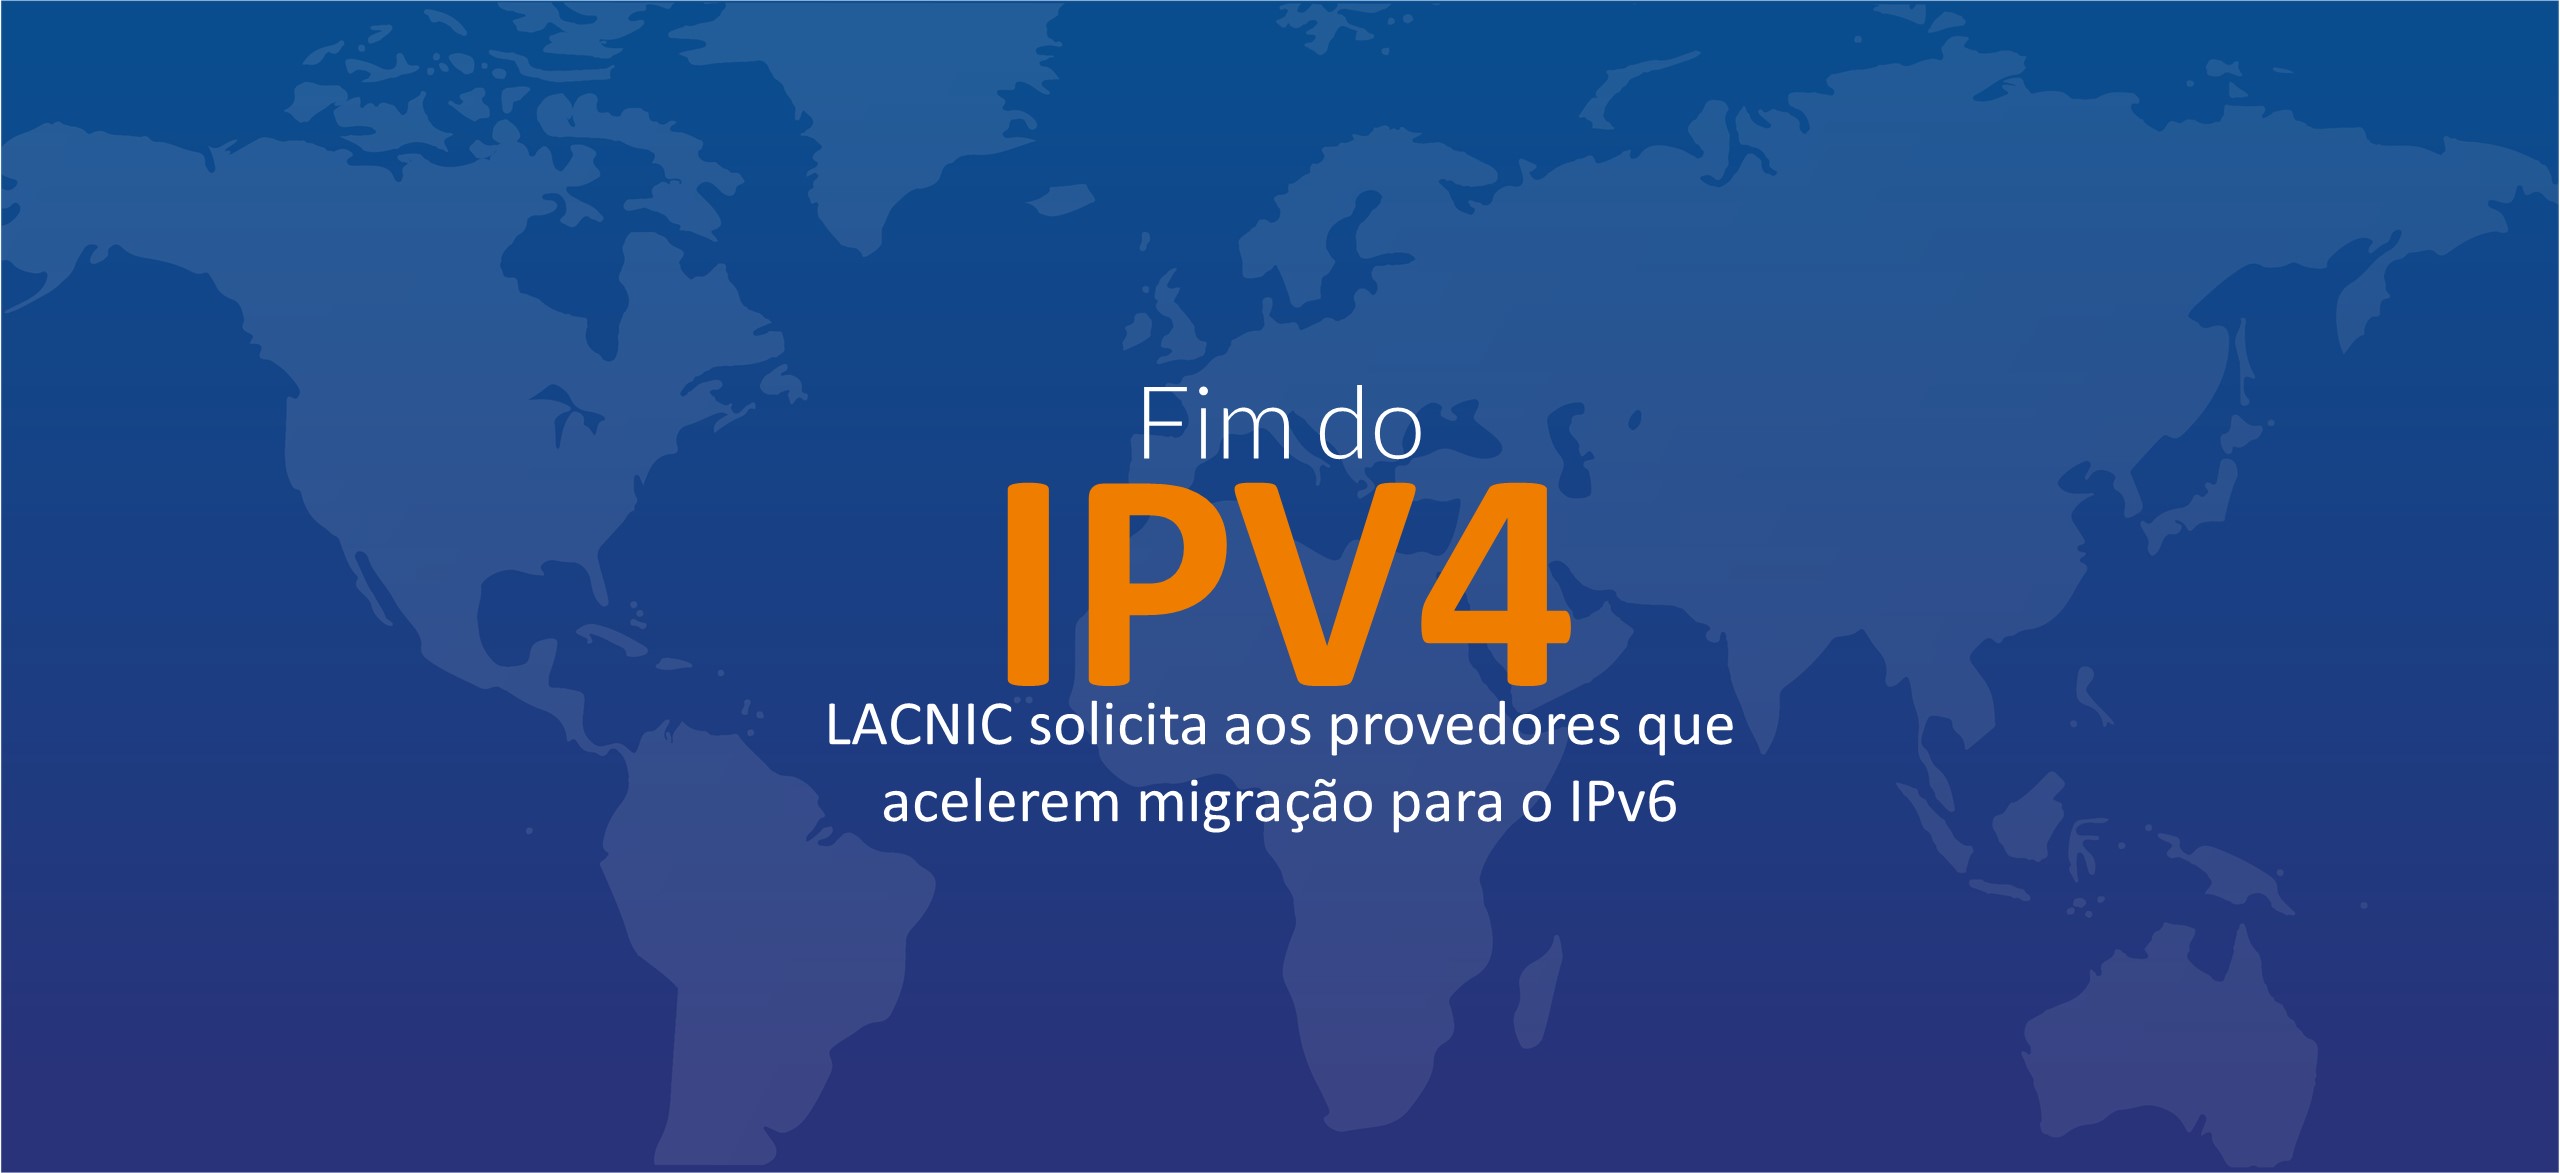 Fim do IPv4